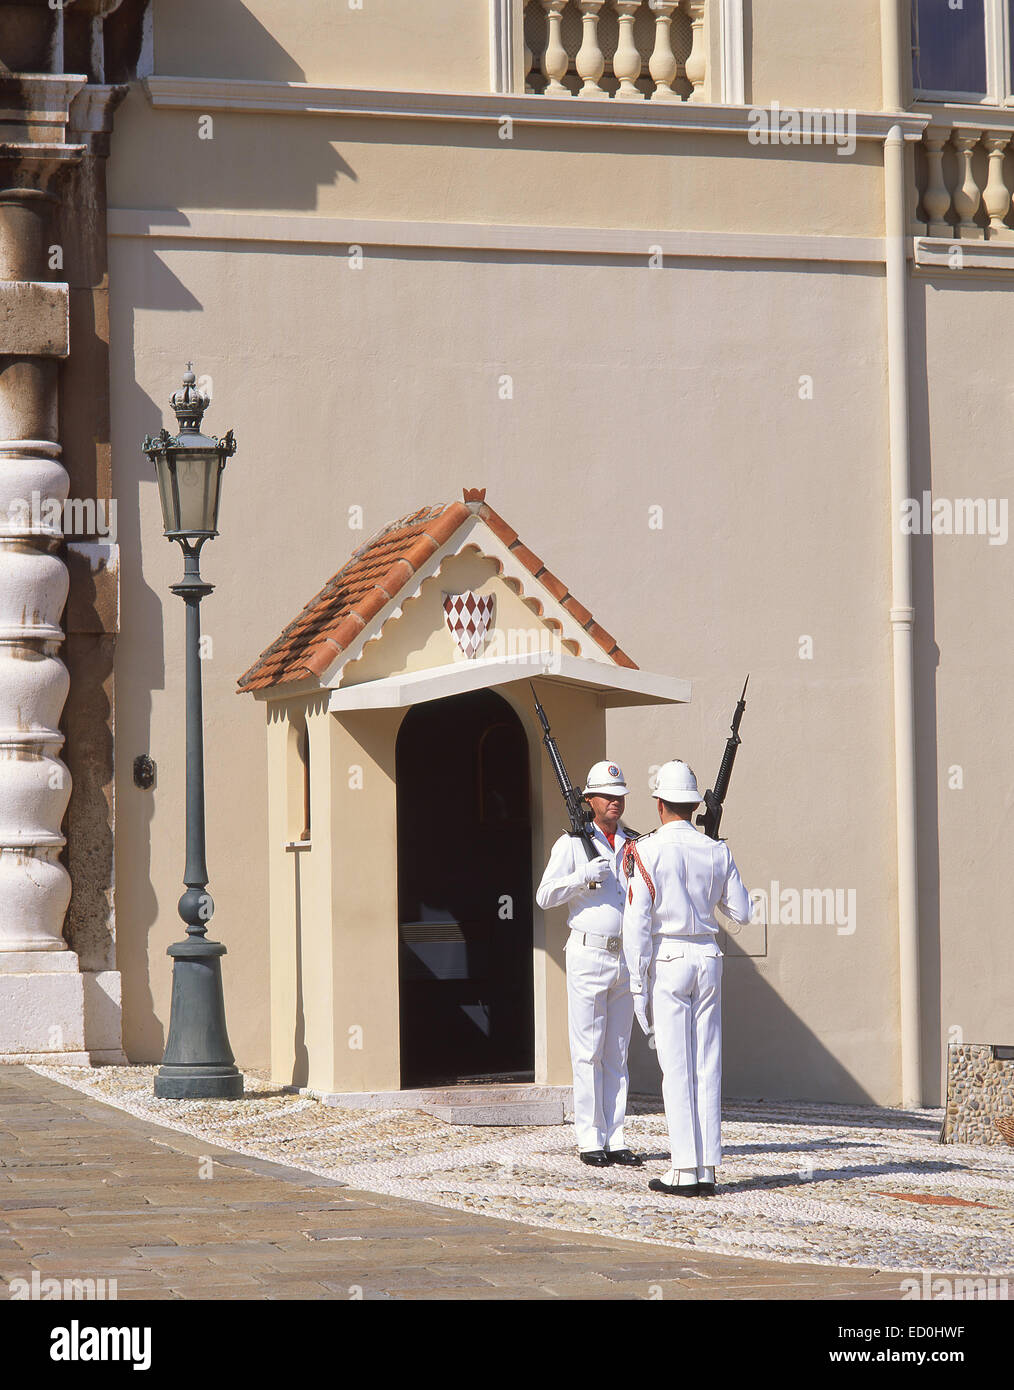 Royal guards, Palais Princier de Monaco, Place du Palais, Monaco-Ville, Principality of Monaco Stock Photo